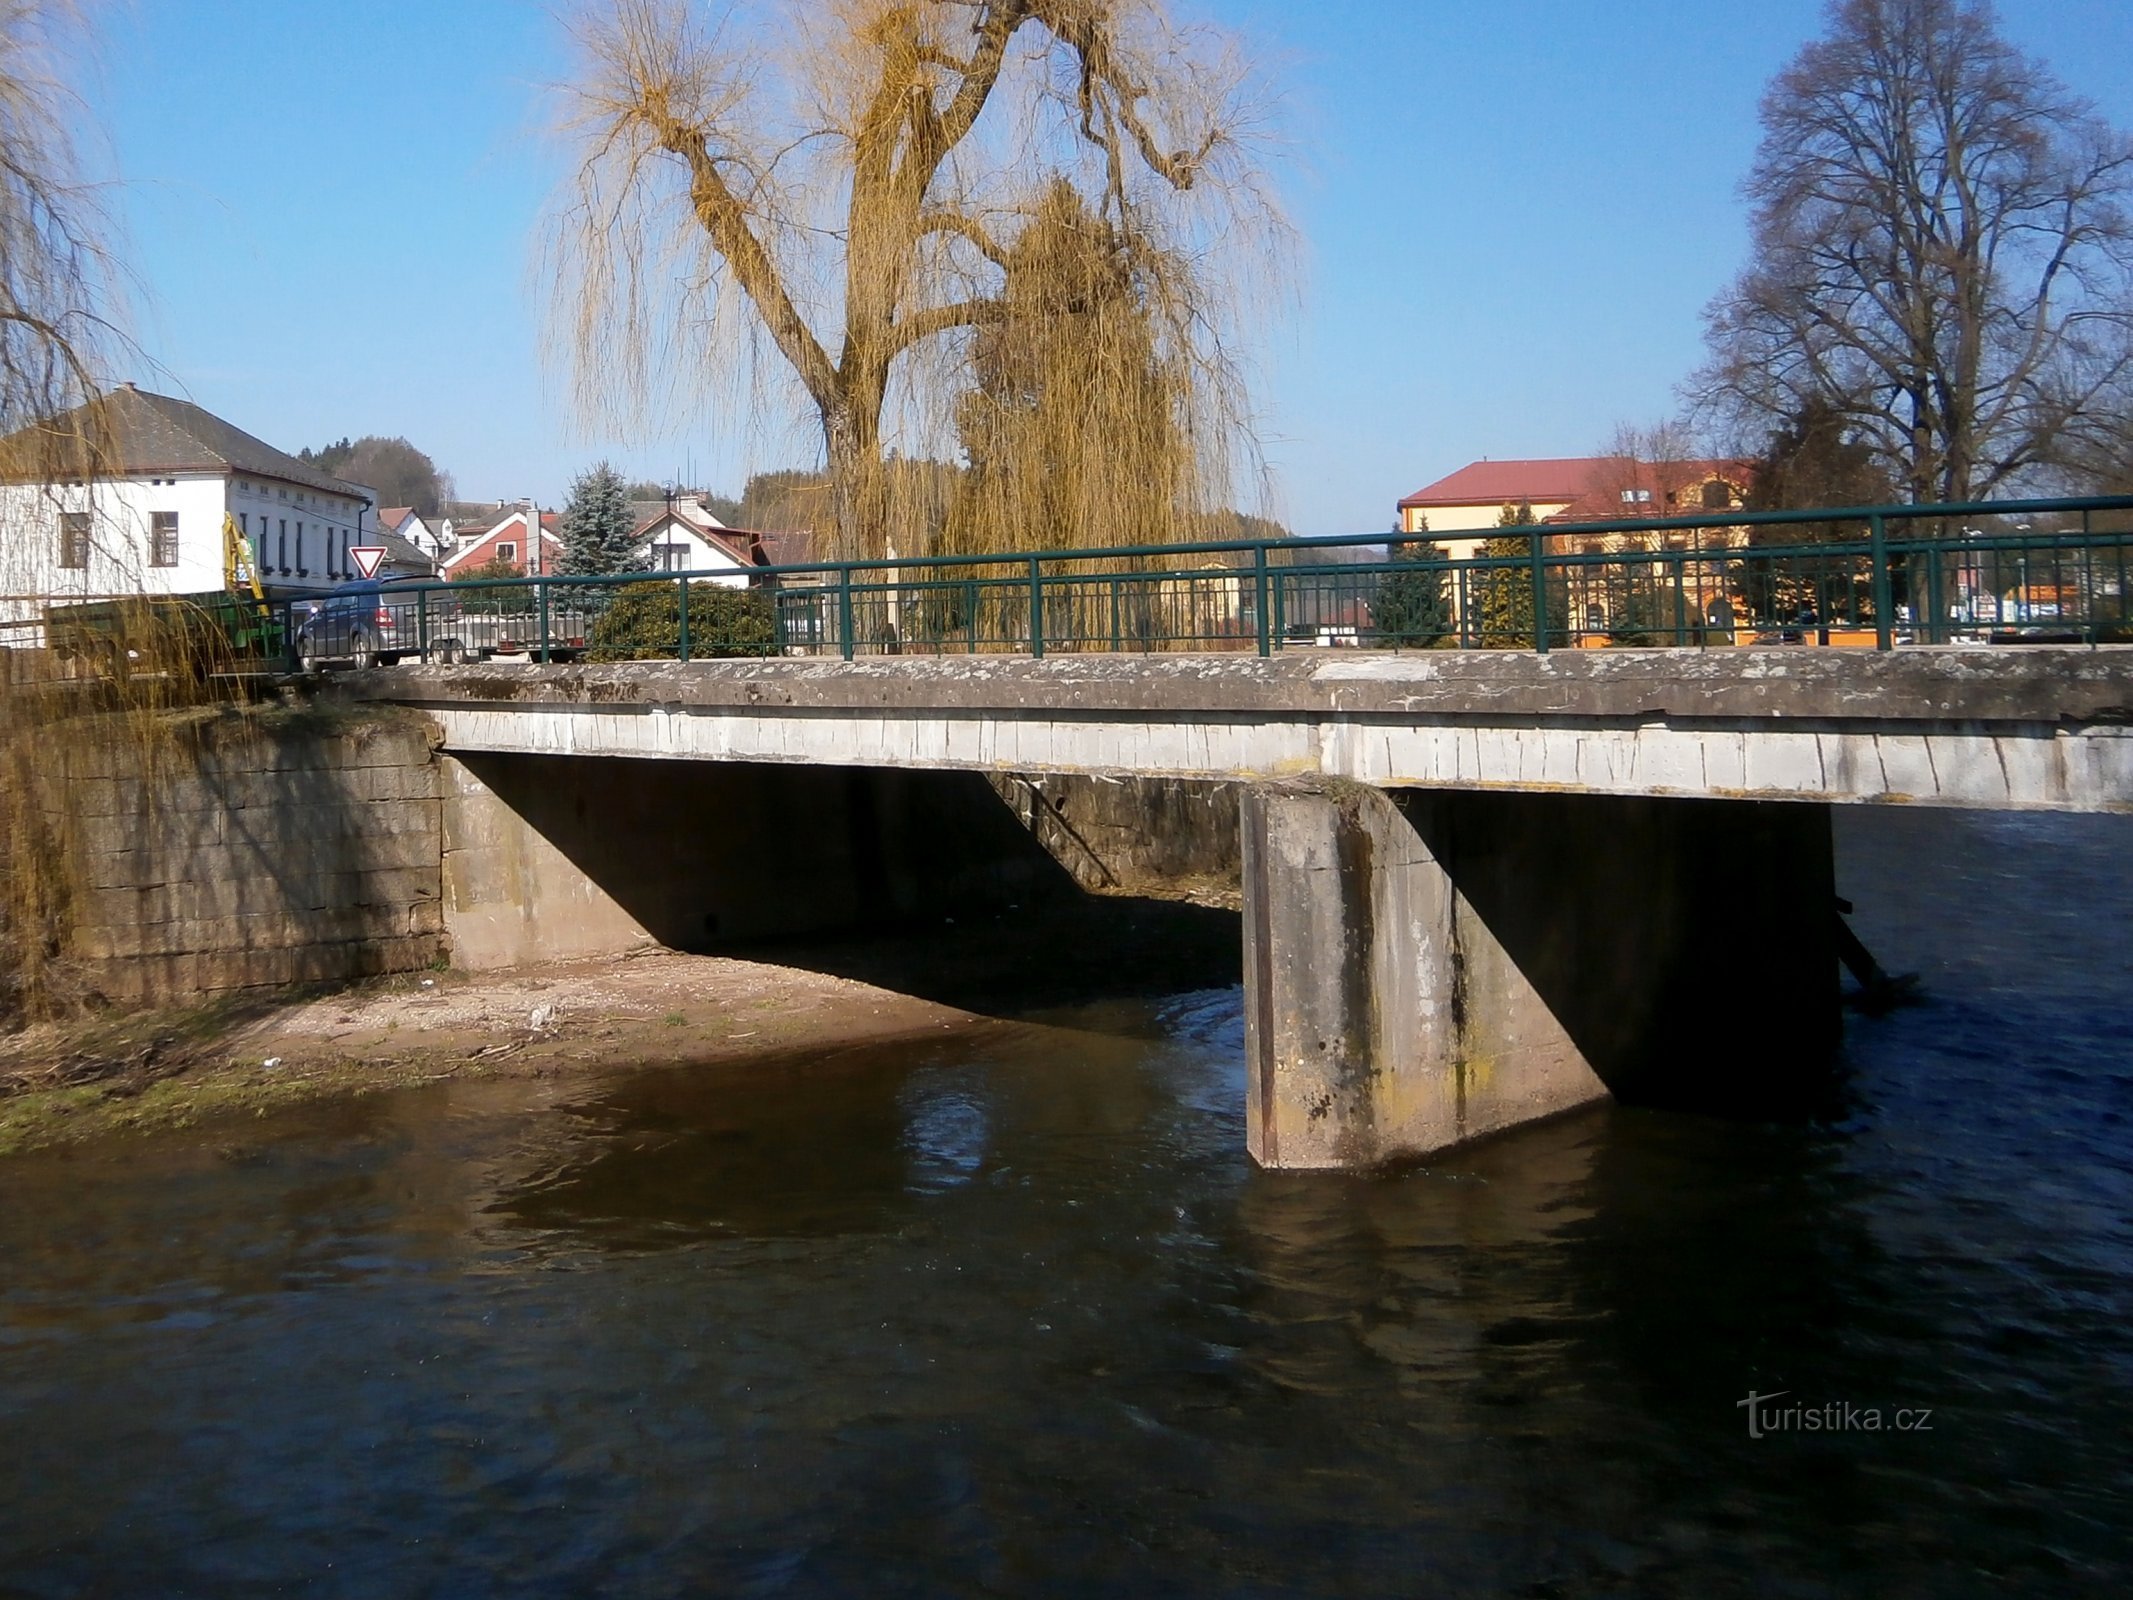 Cầu bê tông qua Úpa (Havlovice)